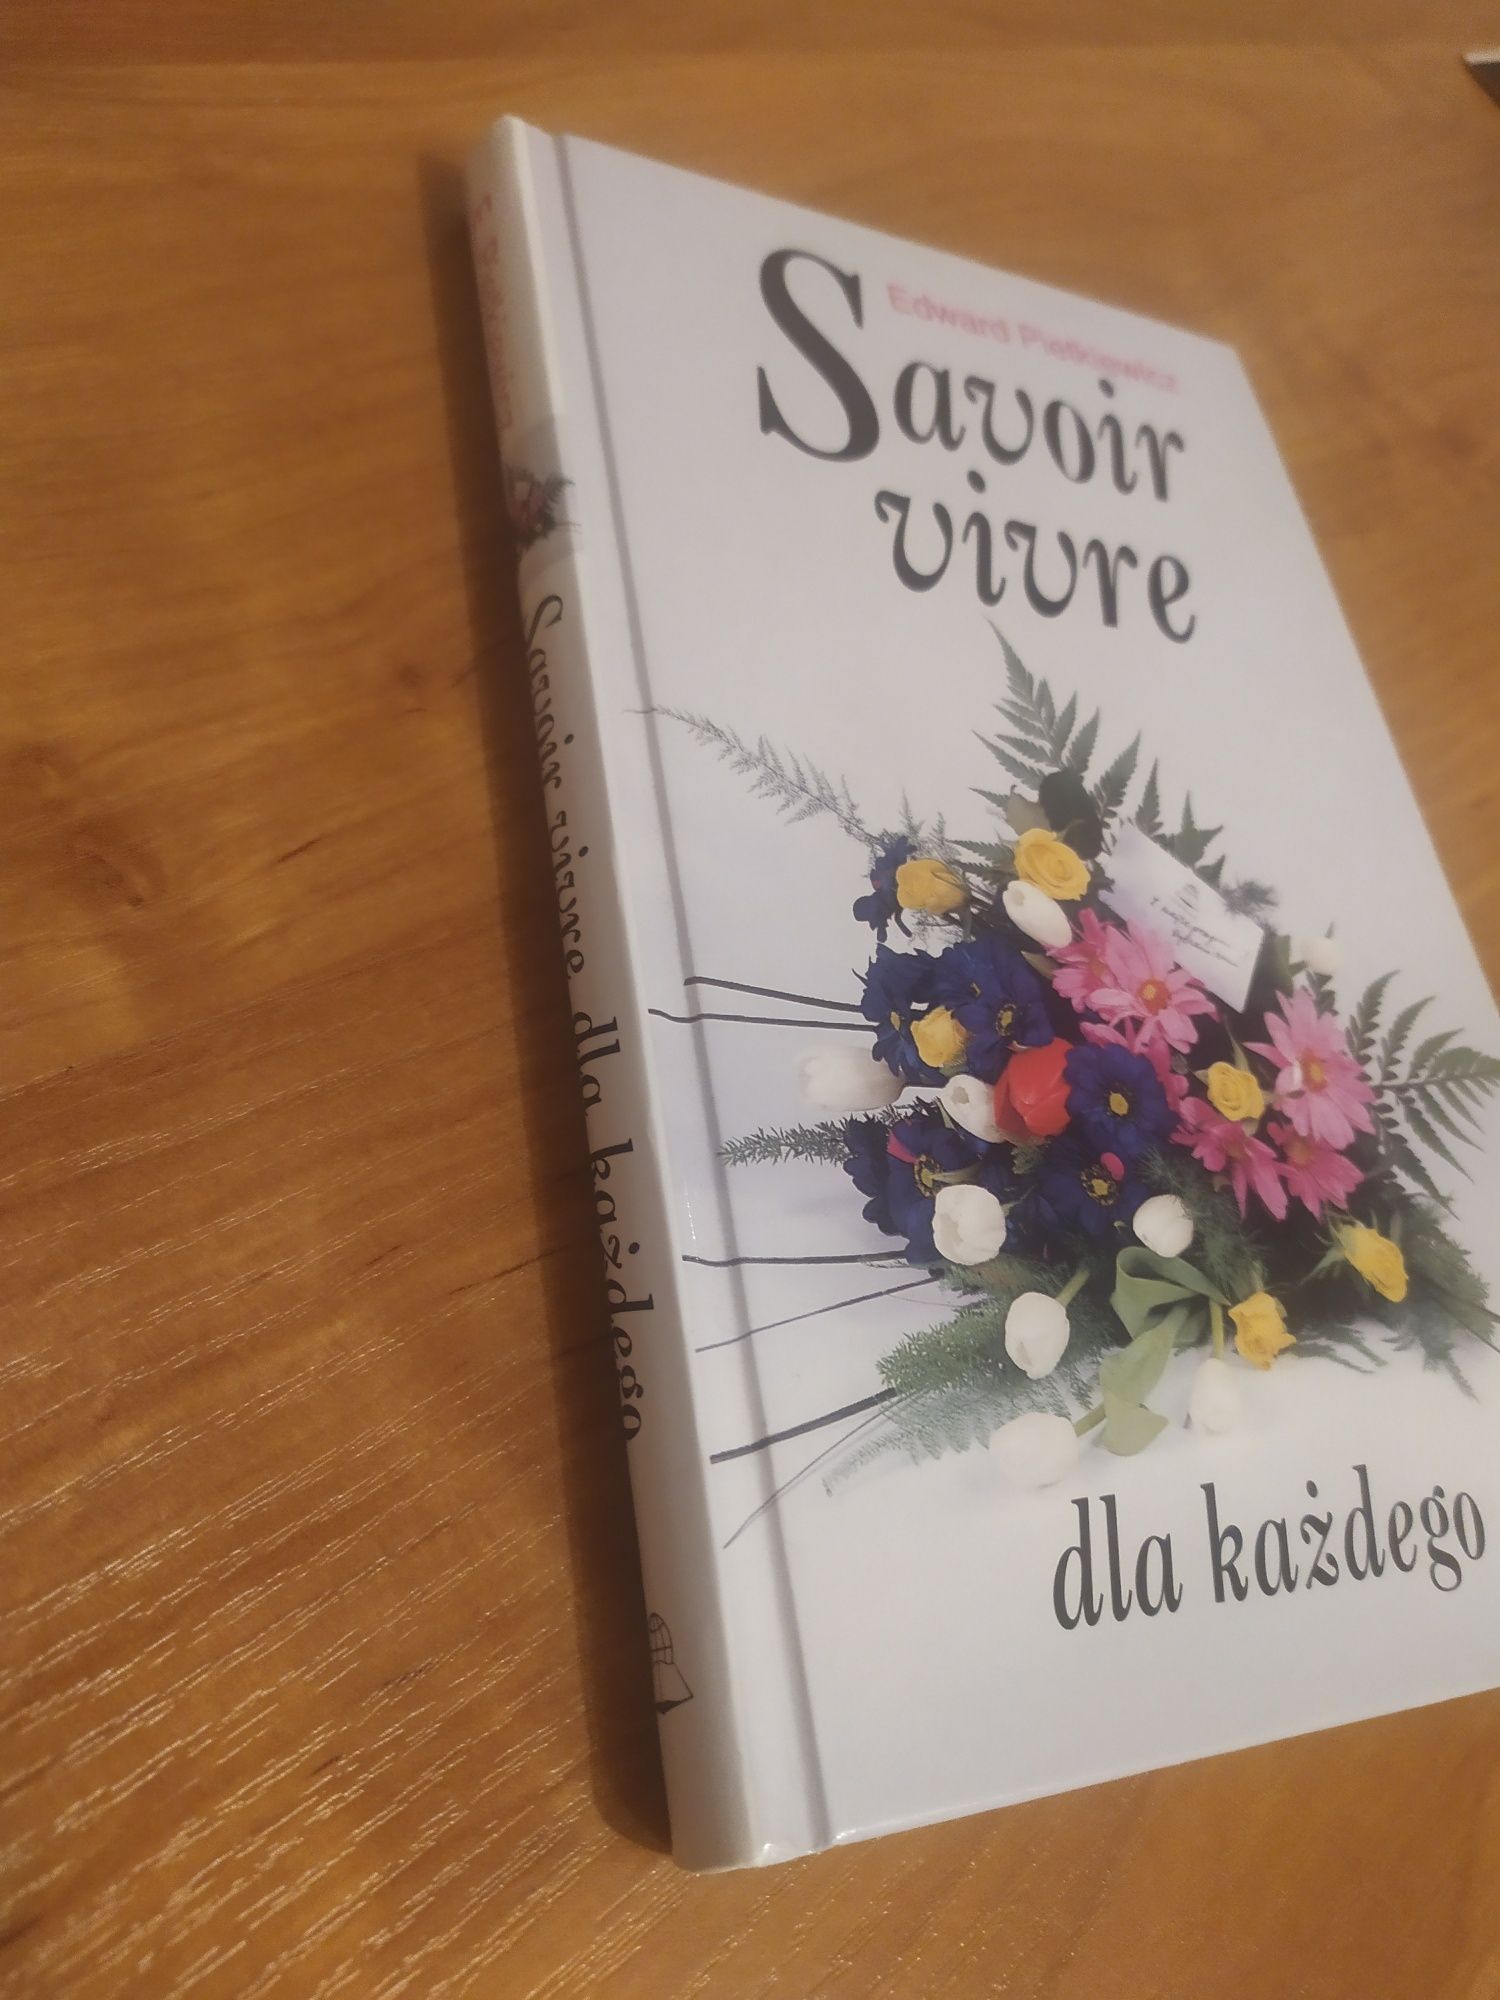 Savoir Vivre dla każdego - książka.